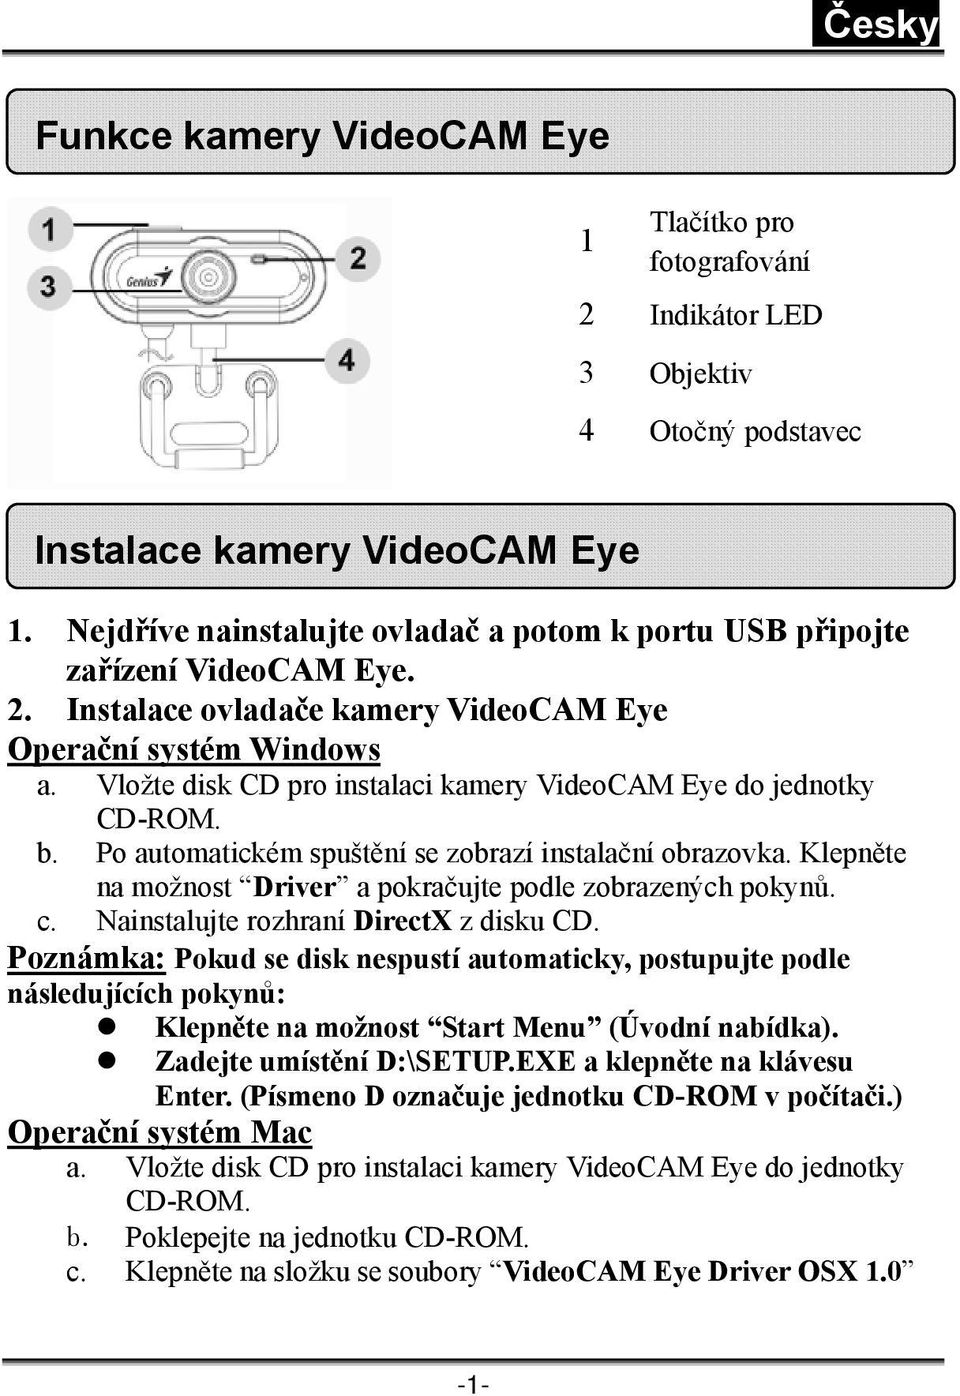 Vložte disk CD pro instalaci kamery VideoCAM Eye do jednotky CD-ROM. b. Po automatickém spuštění se zobrazí instalační obrazovka. Klepněte na možnost Driver a pokračujte podle zobrazených pokynů. c.